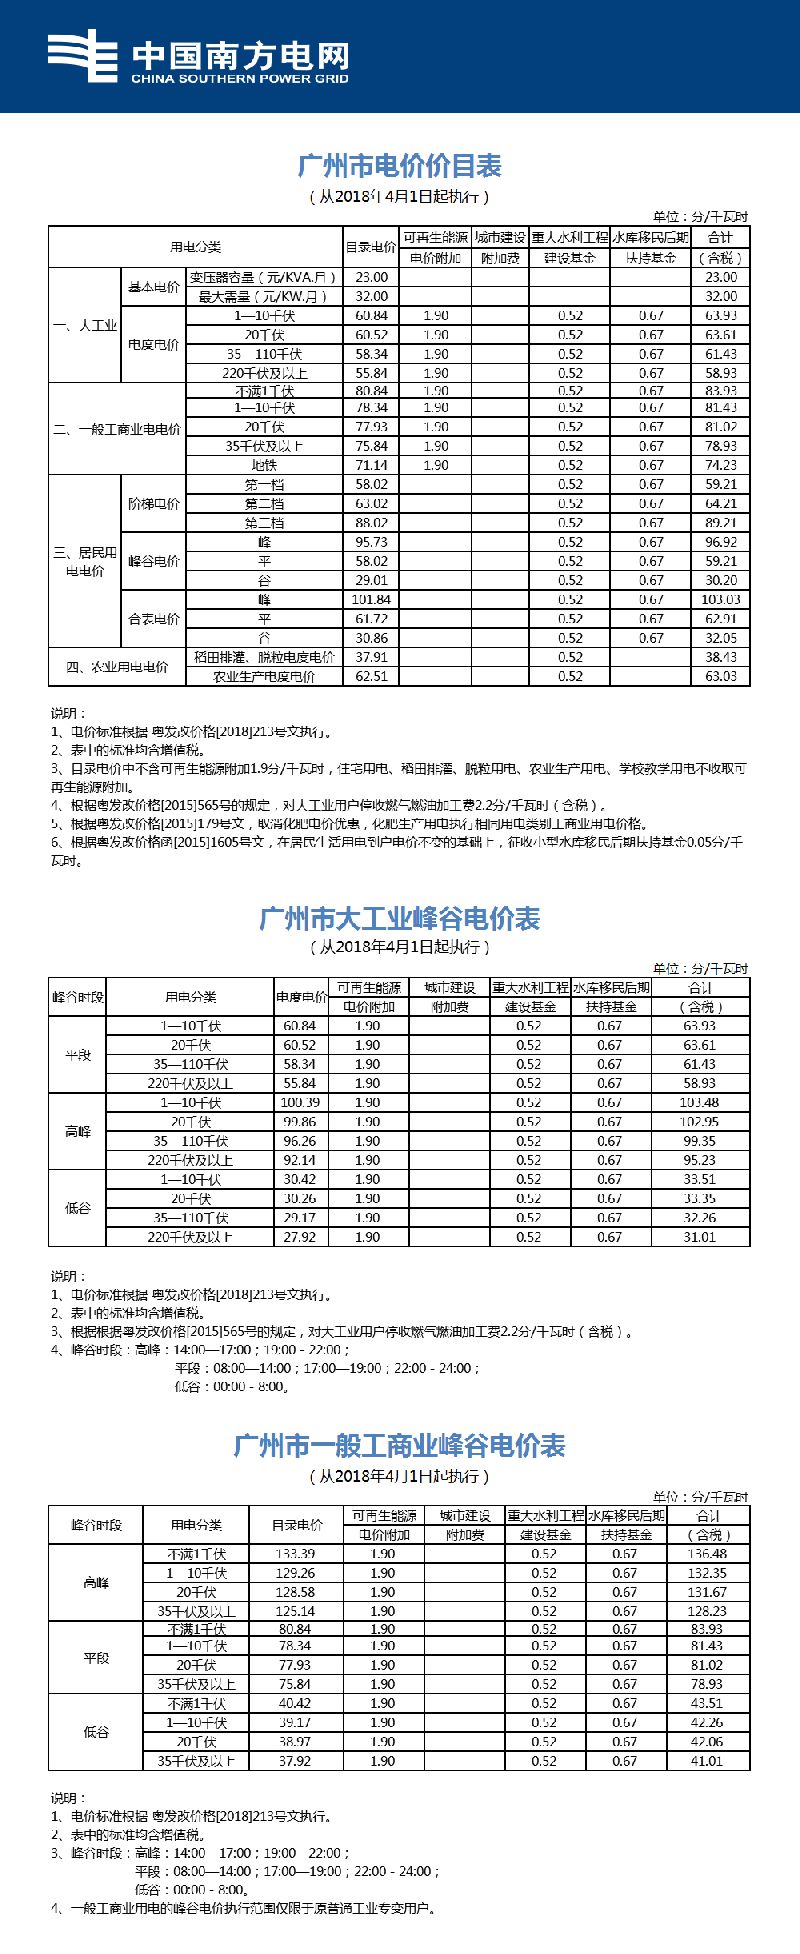 广州居民用电是多少钱一度?阶梯电价怎么算?